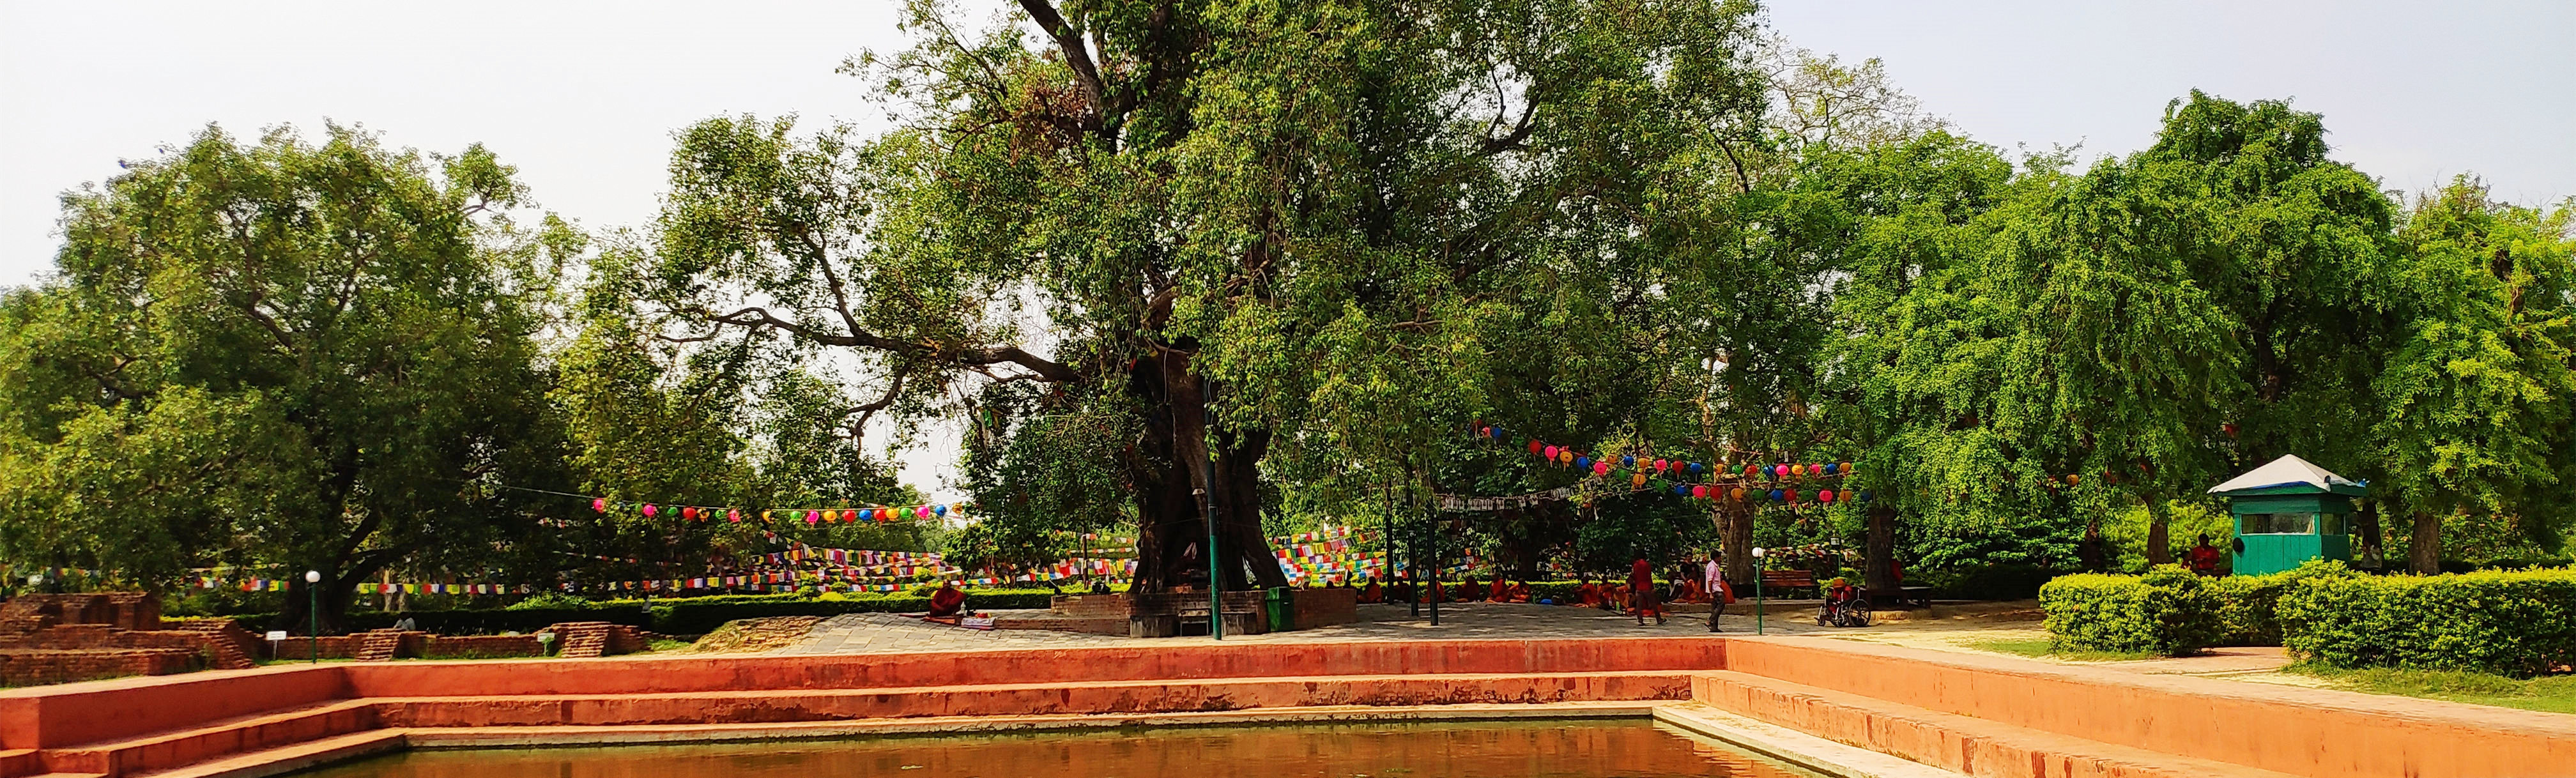 尼泊尔-佛祖成道菩提树